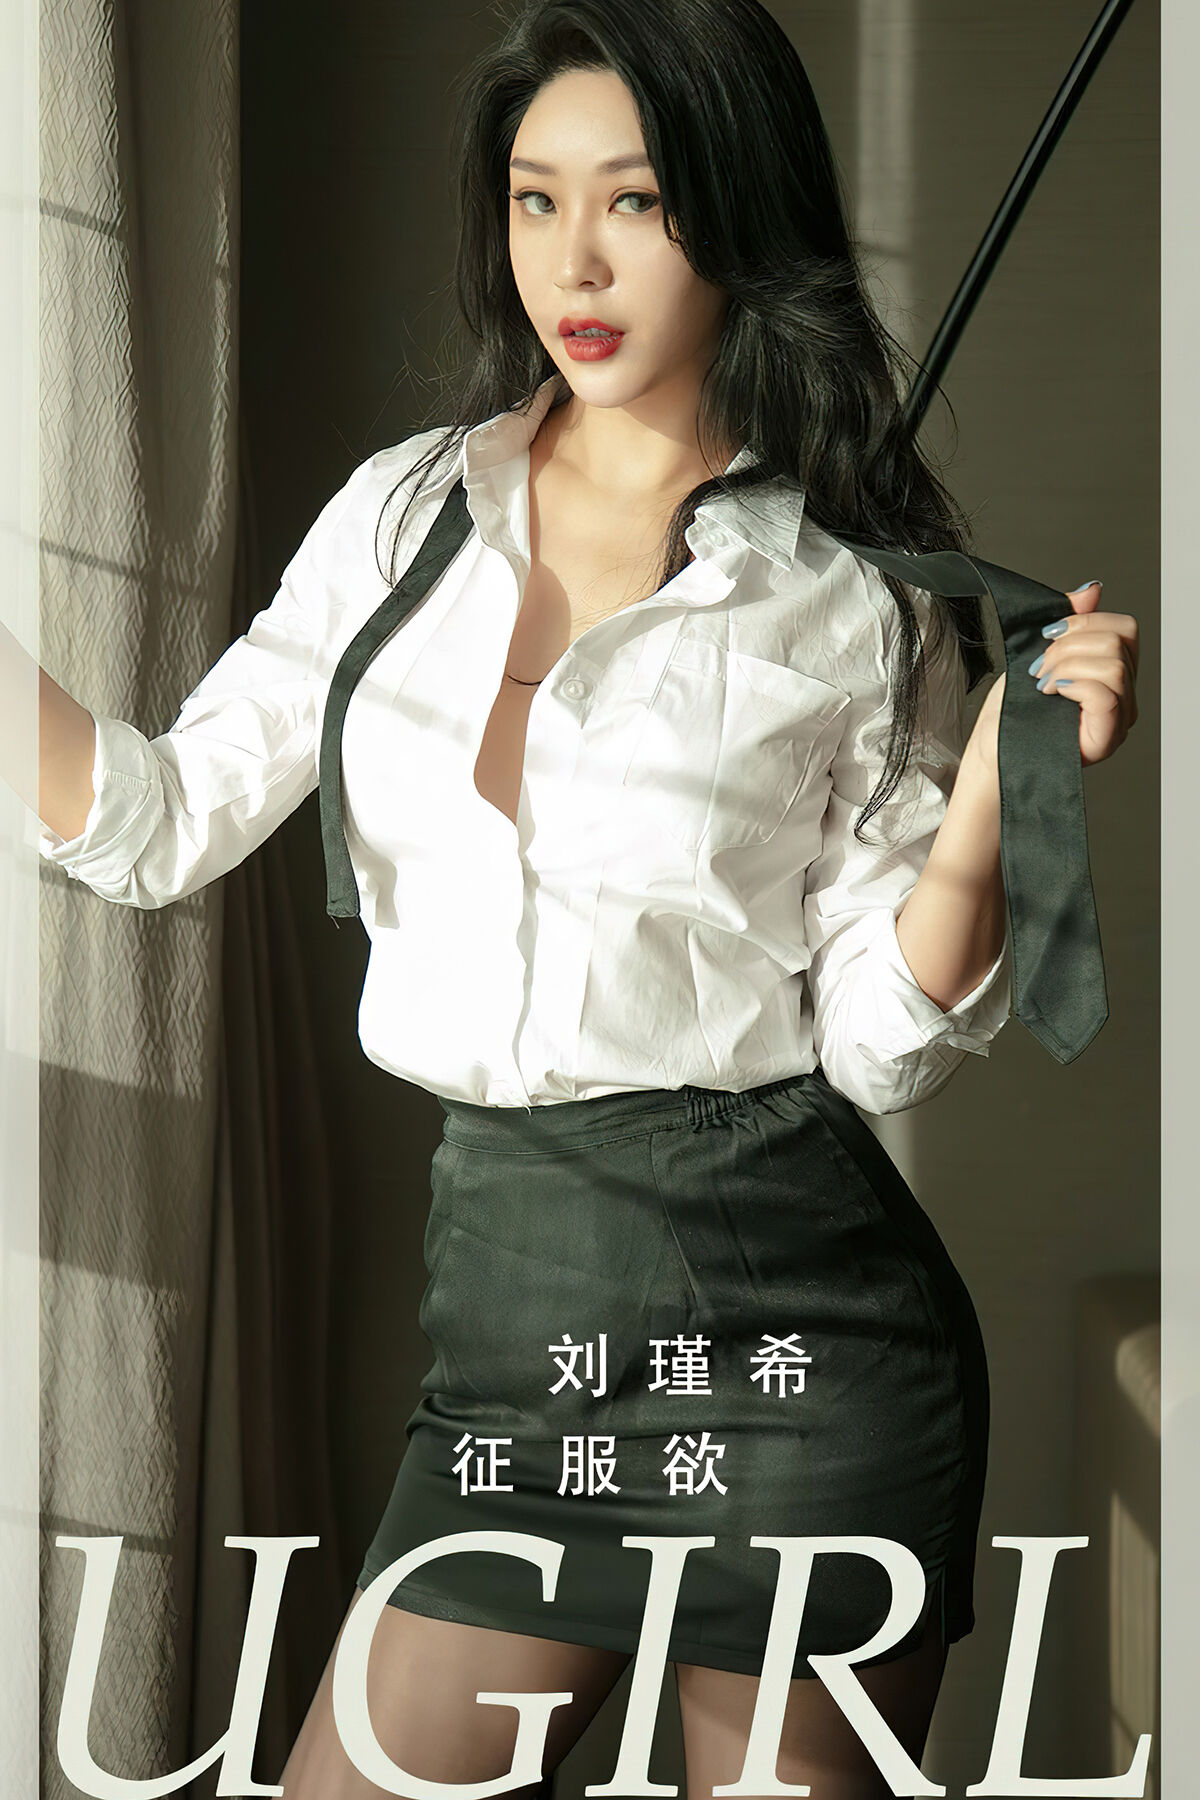 View - Ugirls App NO.2796 Liu Jin Xi - 